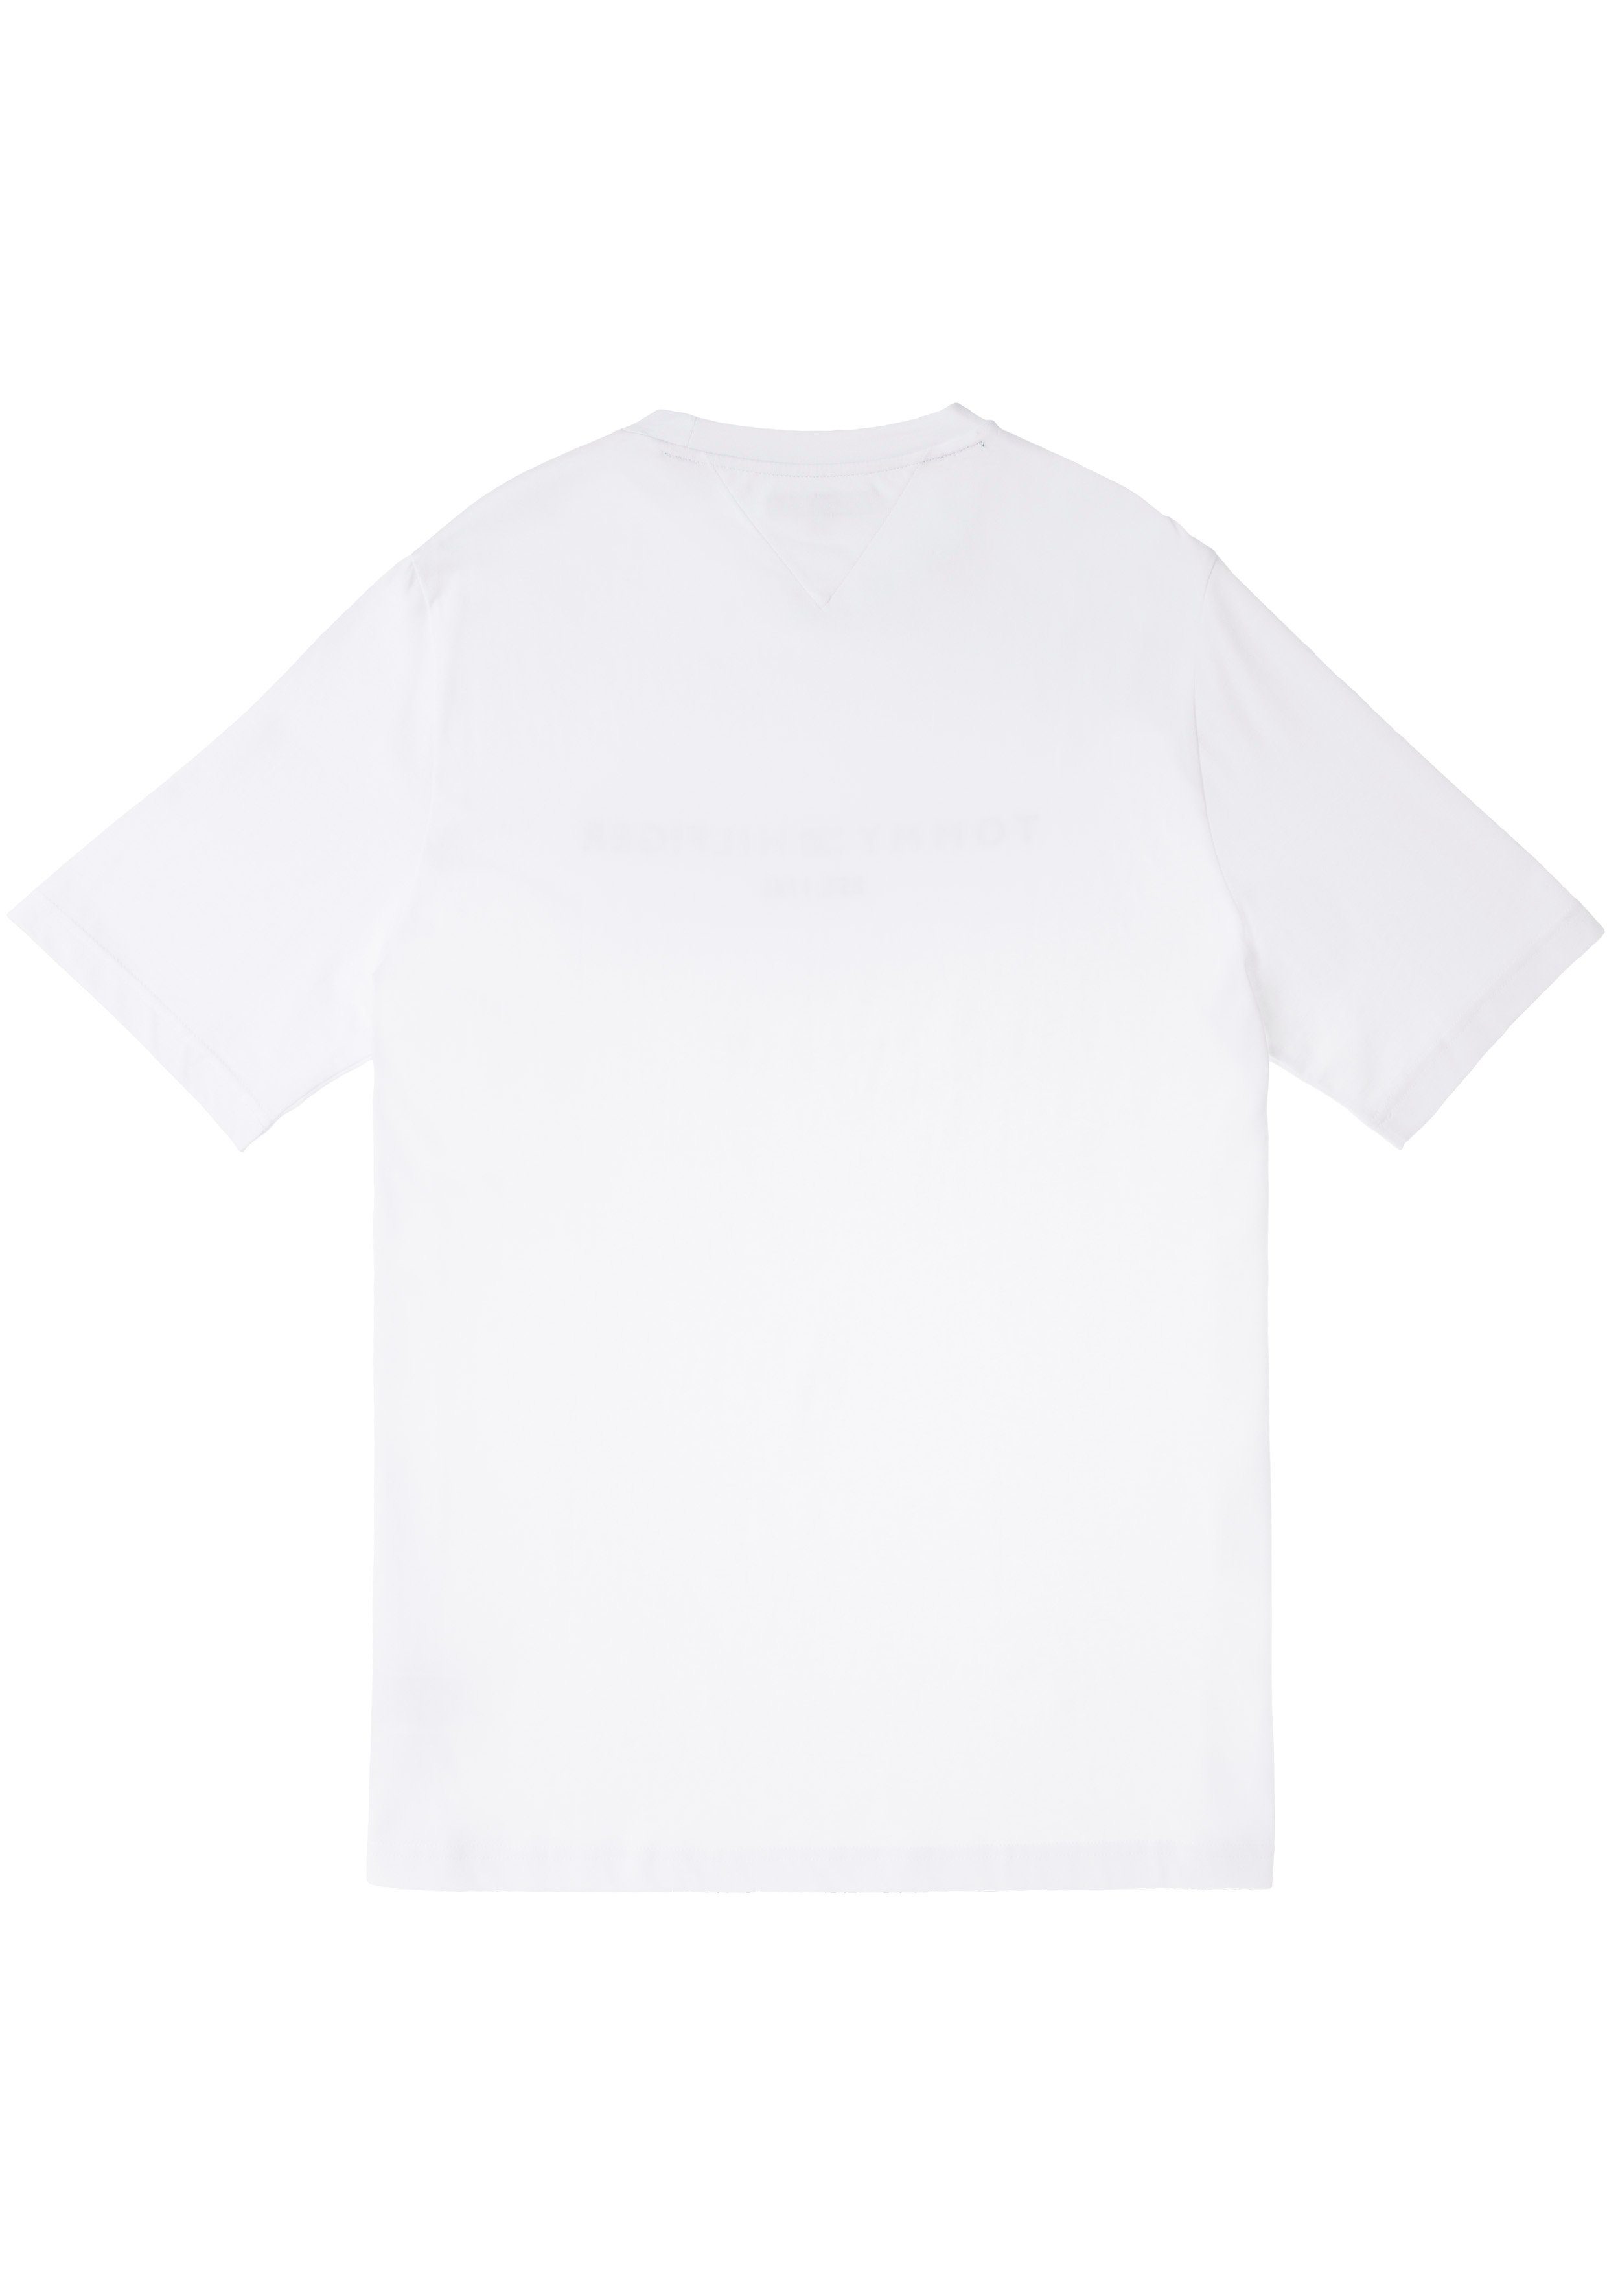 Tommy Hilfiger Big & auf der weiß Logoschriftzug LOGO mit Brust TEE-B Hilfiger Tommy T-Shirt Tall BT-TOMMY